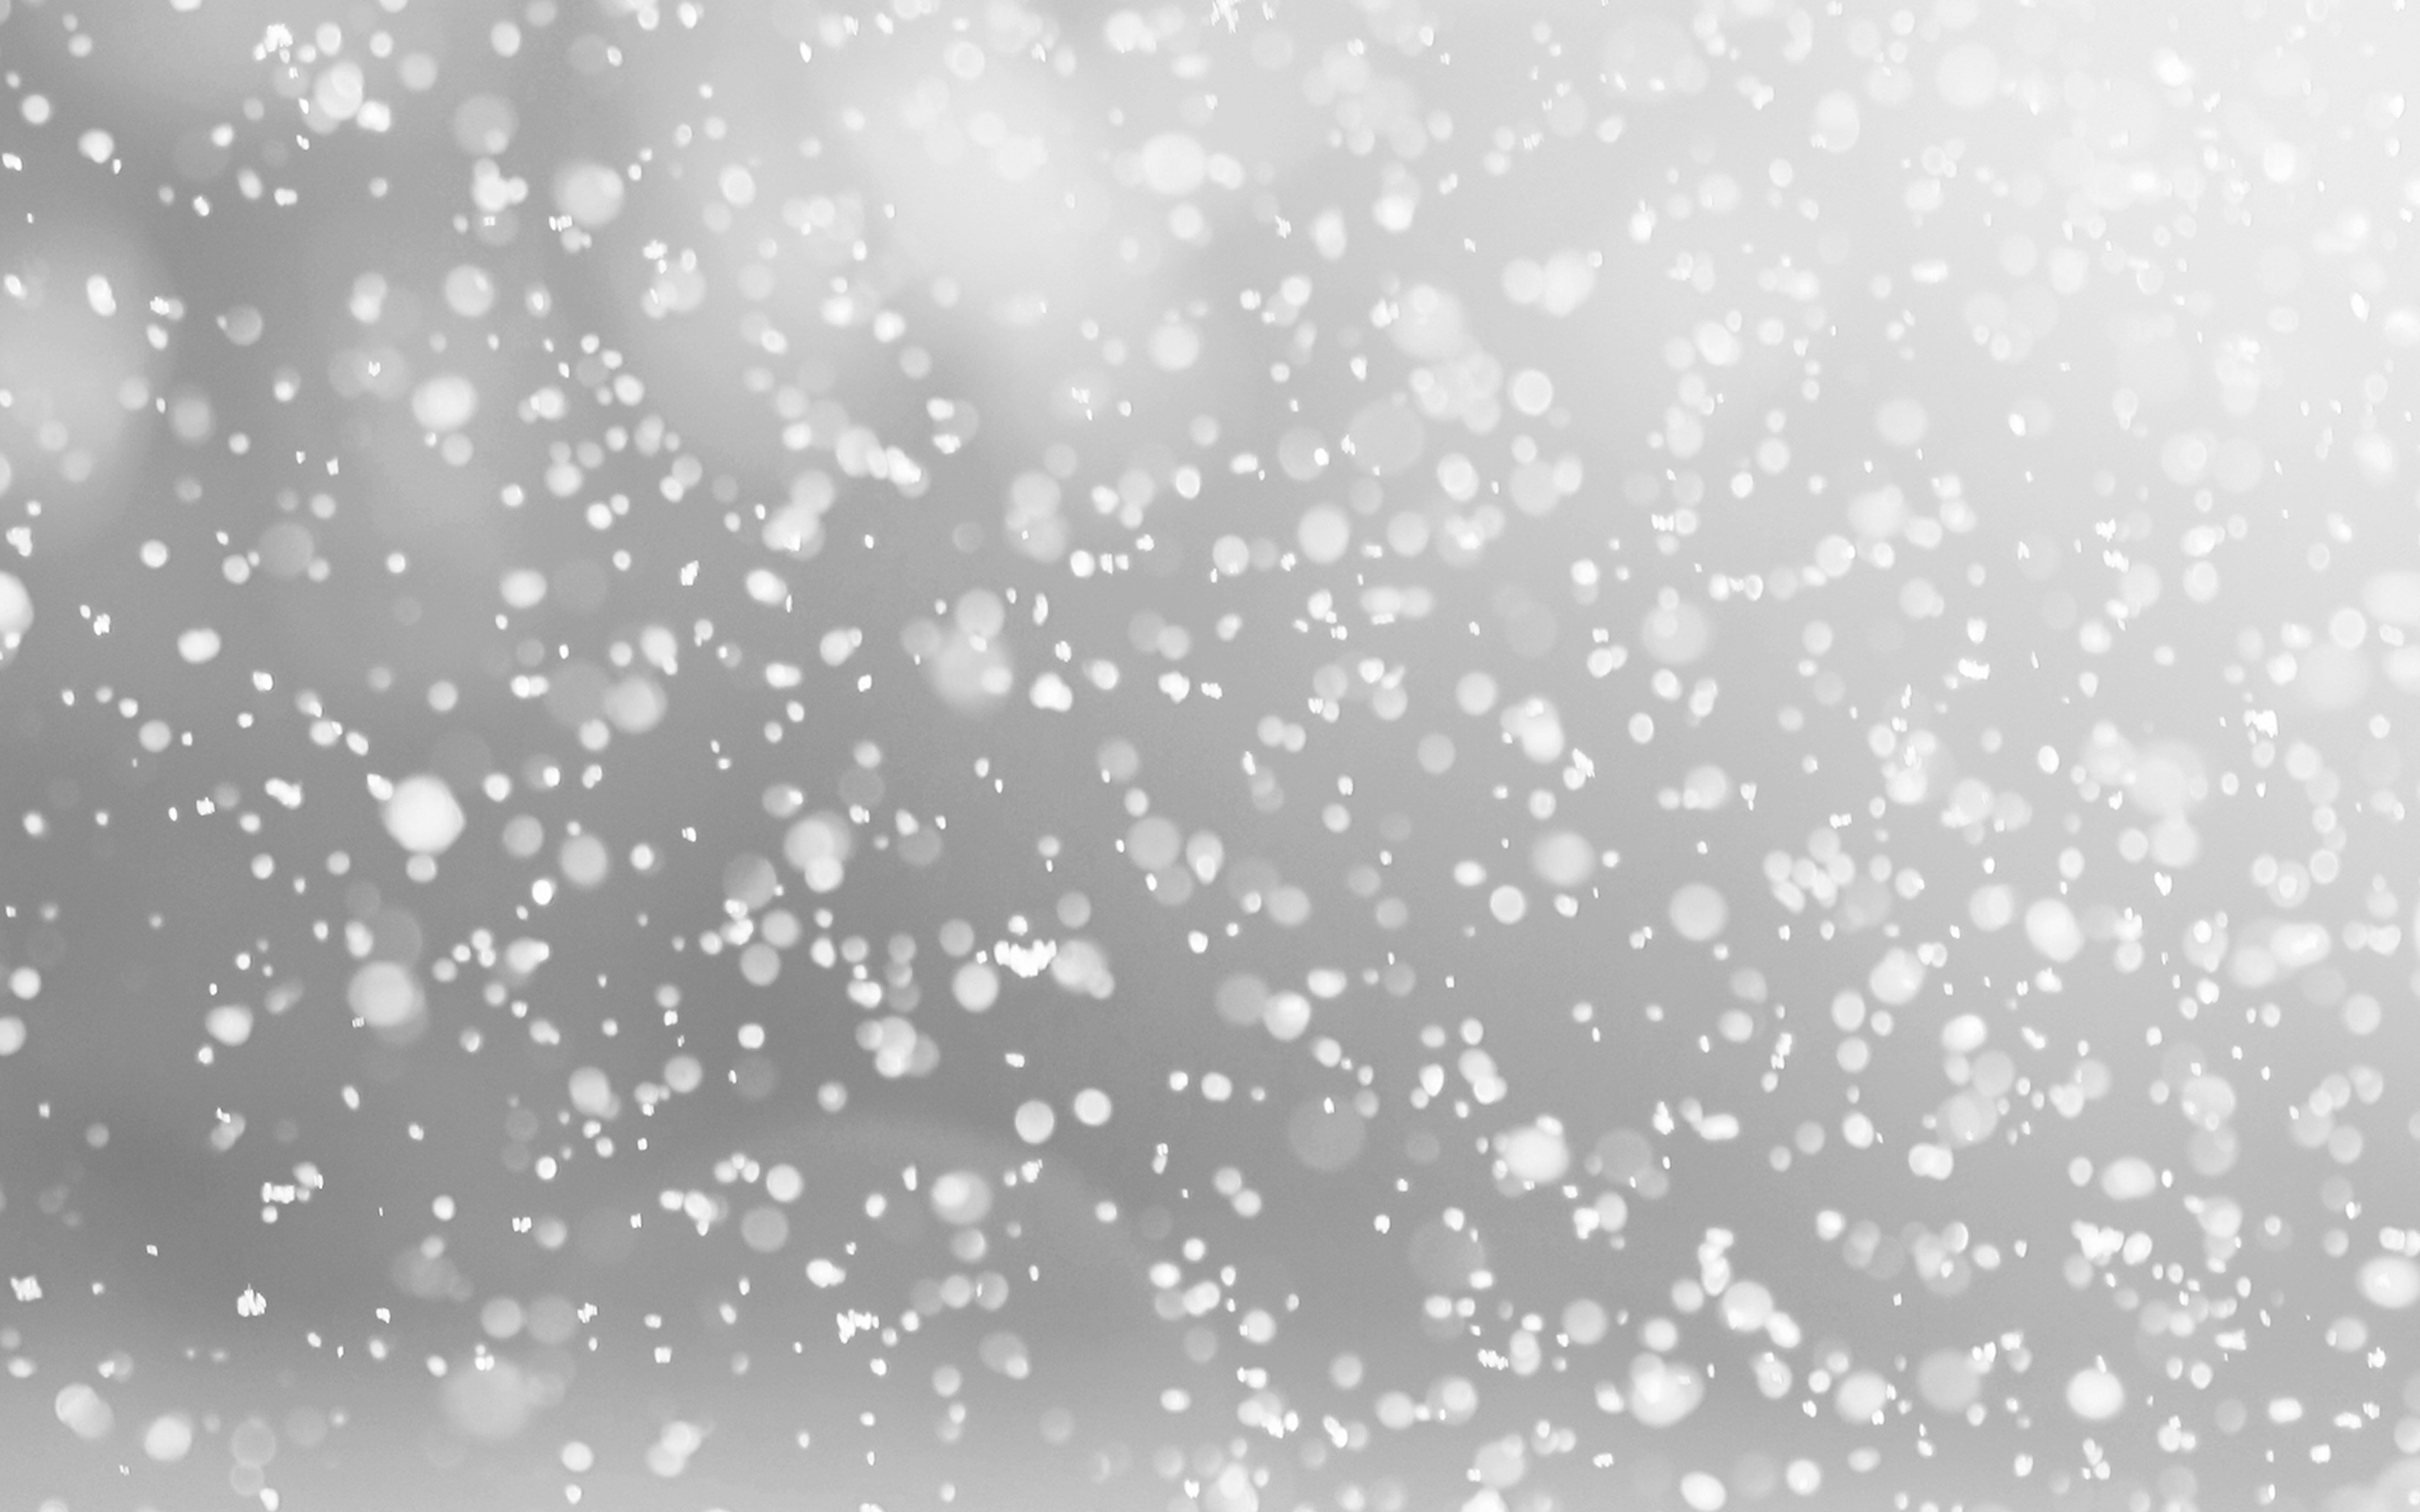 Мелкий снежок. Эффект снега. Снег для фотошопа. Боке снег. Эффект падающего снега.